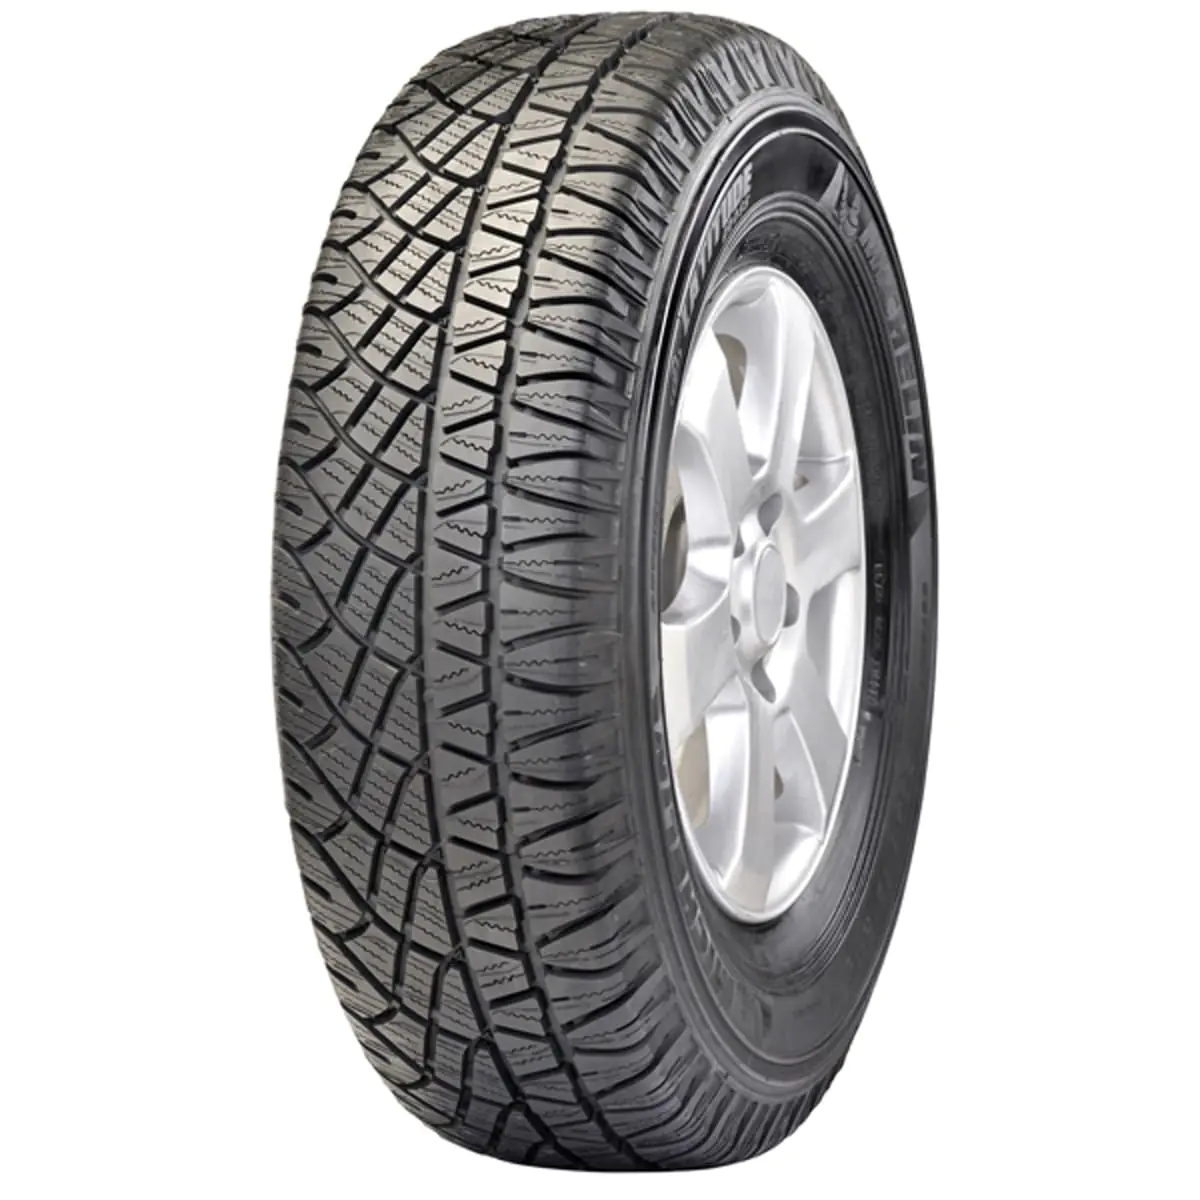 Michelin Michelin 255/55 R18 109V LAT. CROSS XL pneumatici nuovi Estivo 